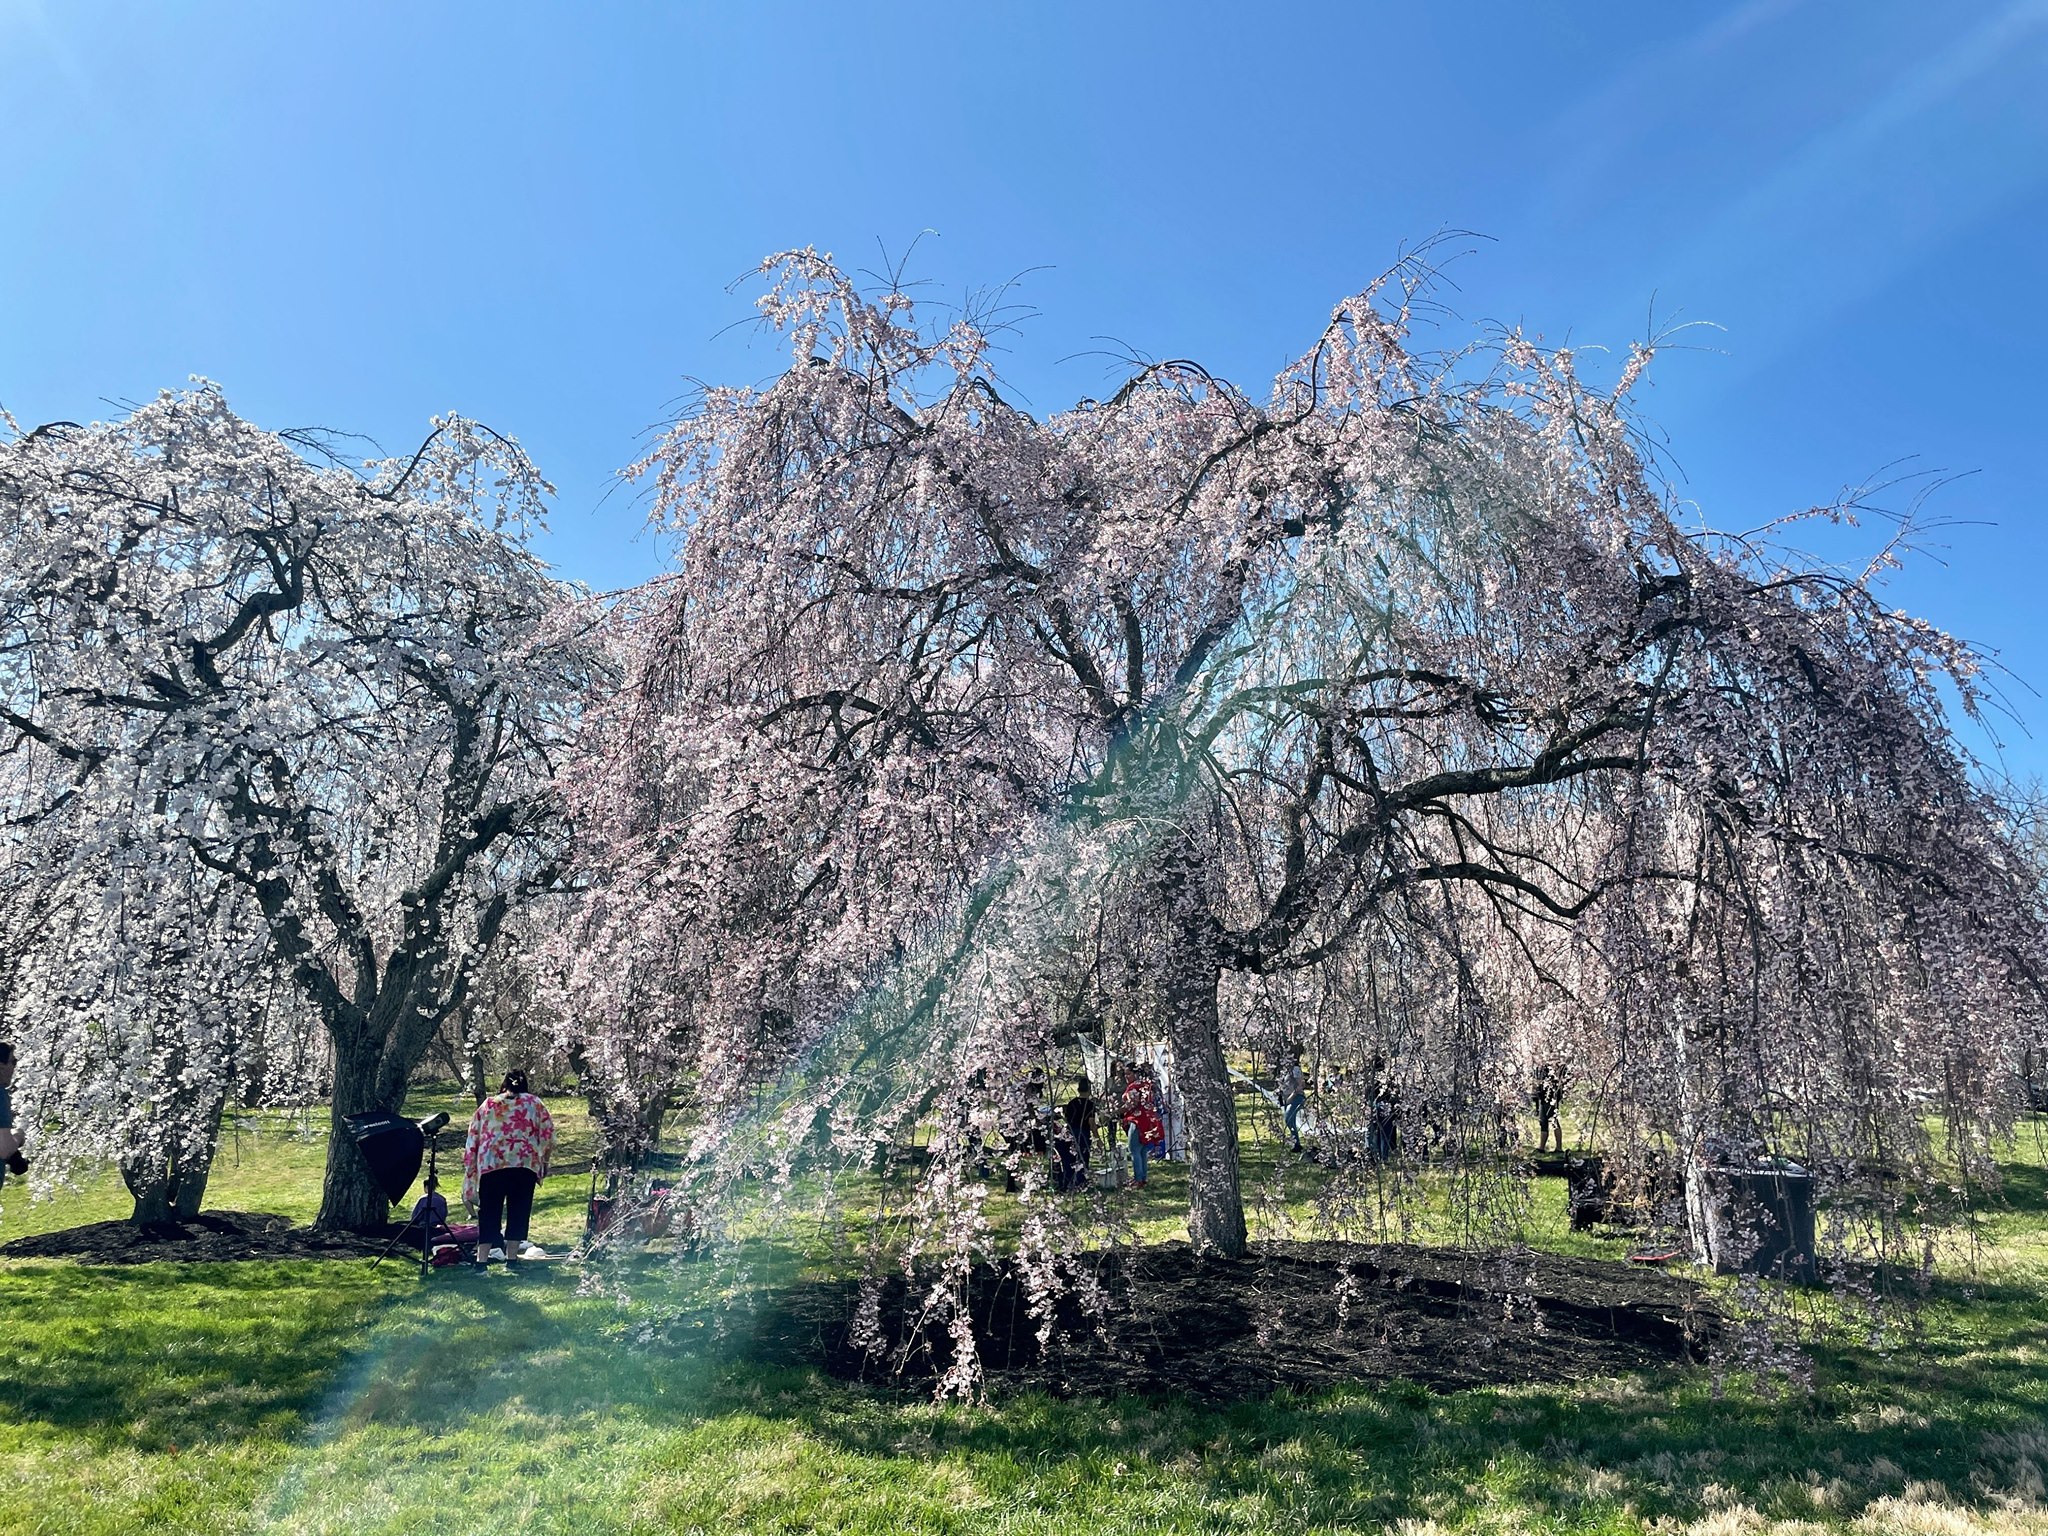 Landscaping Cincinnati: Clusters of Flowering Trees